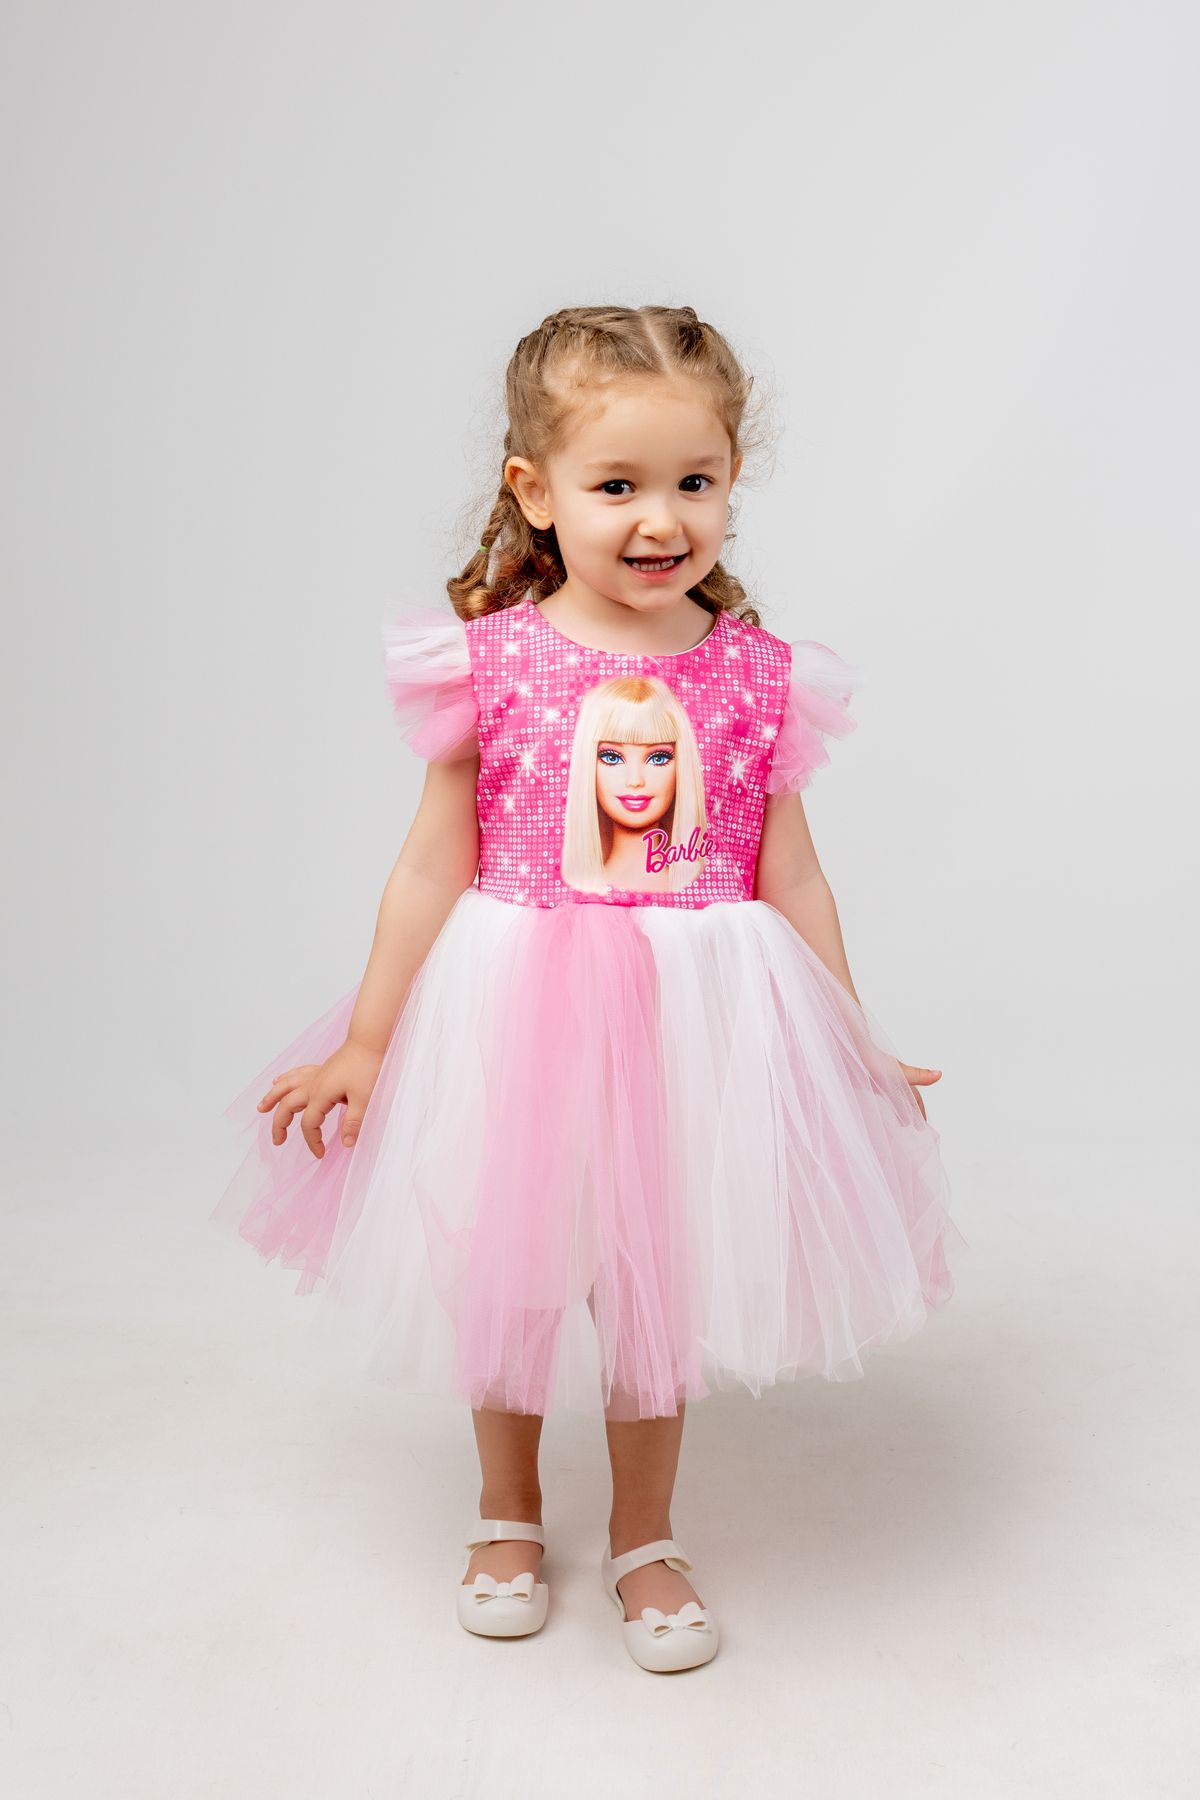 Little Pumpkin Tütülü Doğumgünü & Özel Gün Barbie Elbise